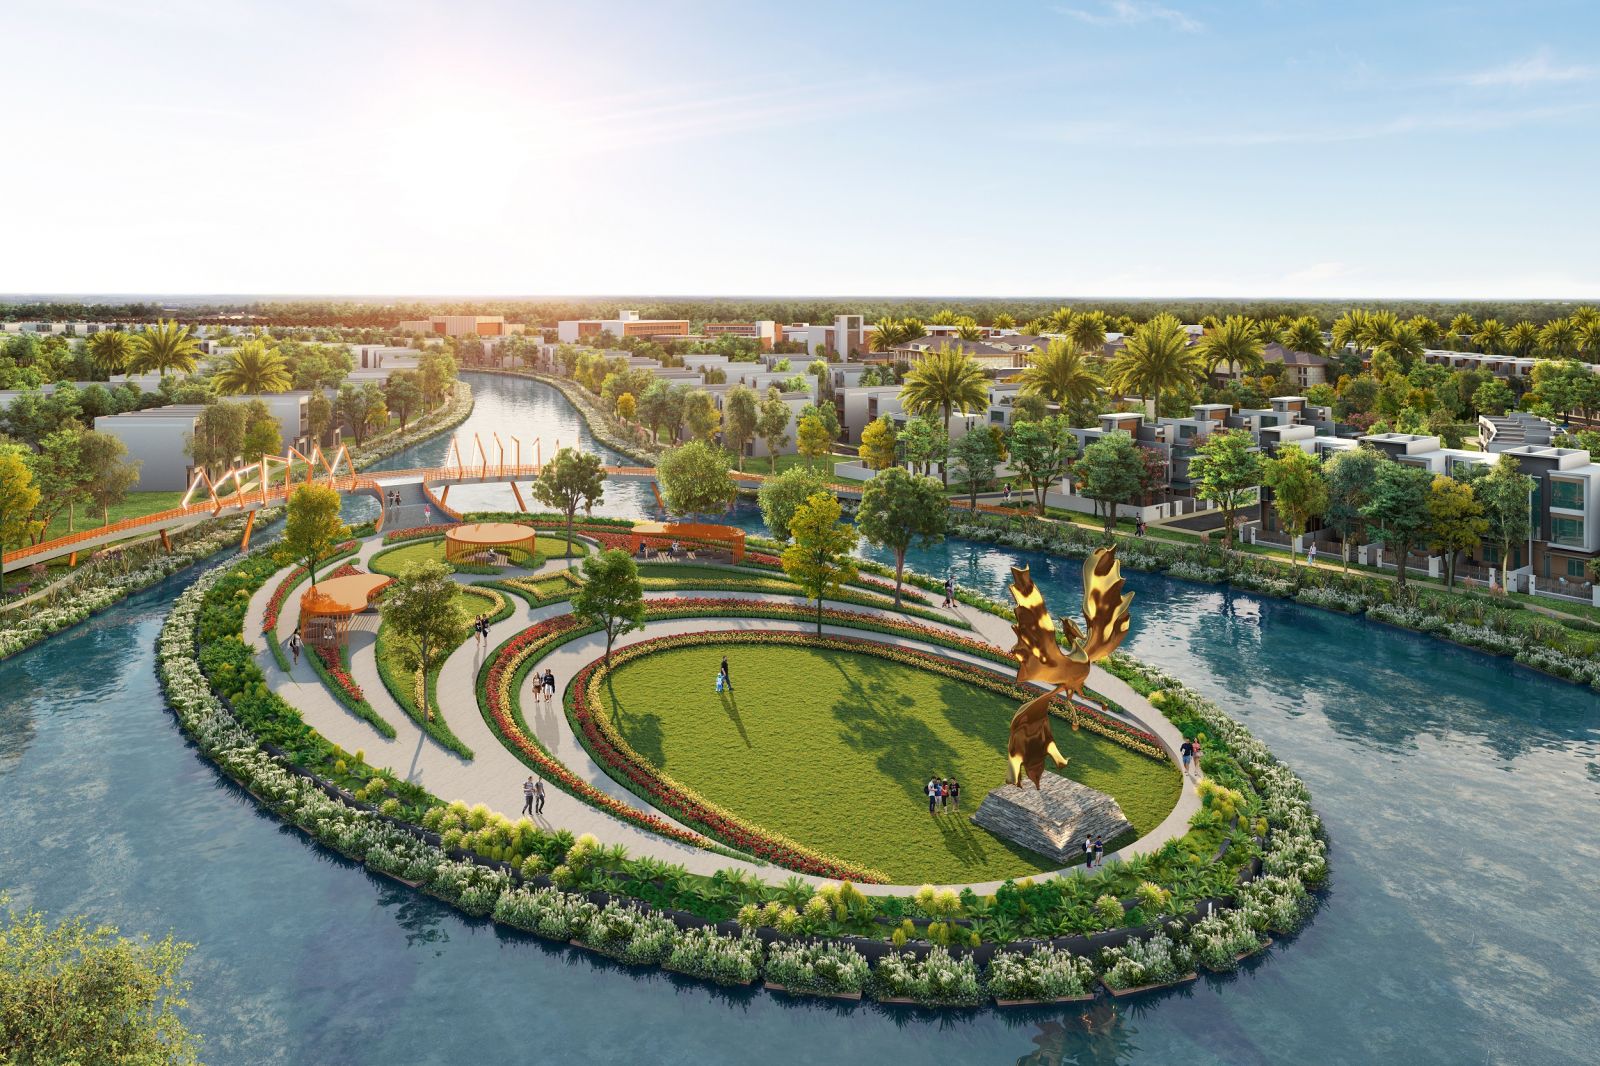 Dựu án Aqua City quy hoạch theo mô hình đô thị sinh thái thông minh dành tới hơn 70% diện tích cho mảng xanh, tiện ích nội khu